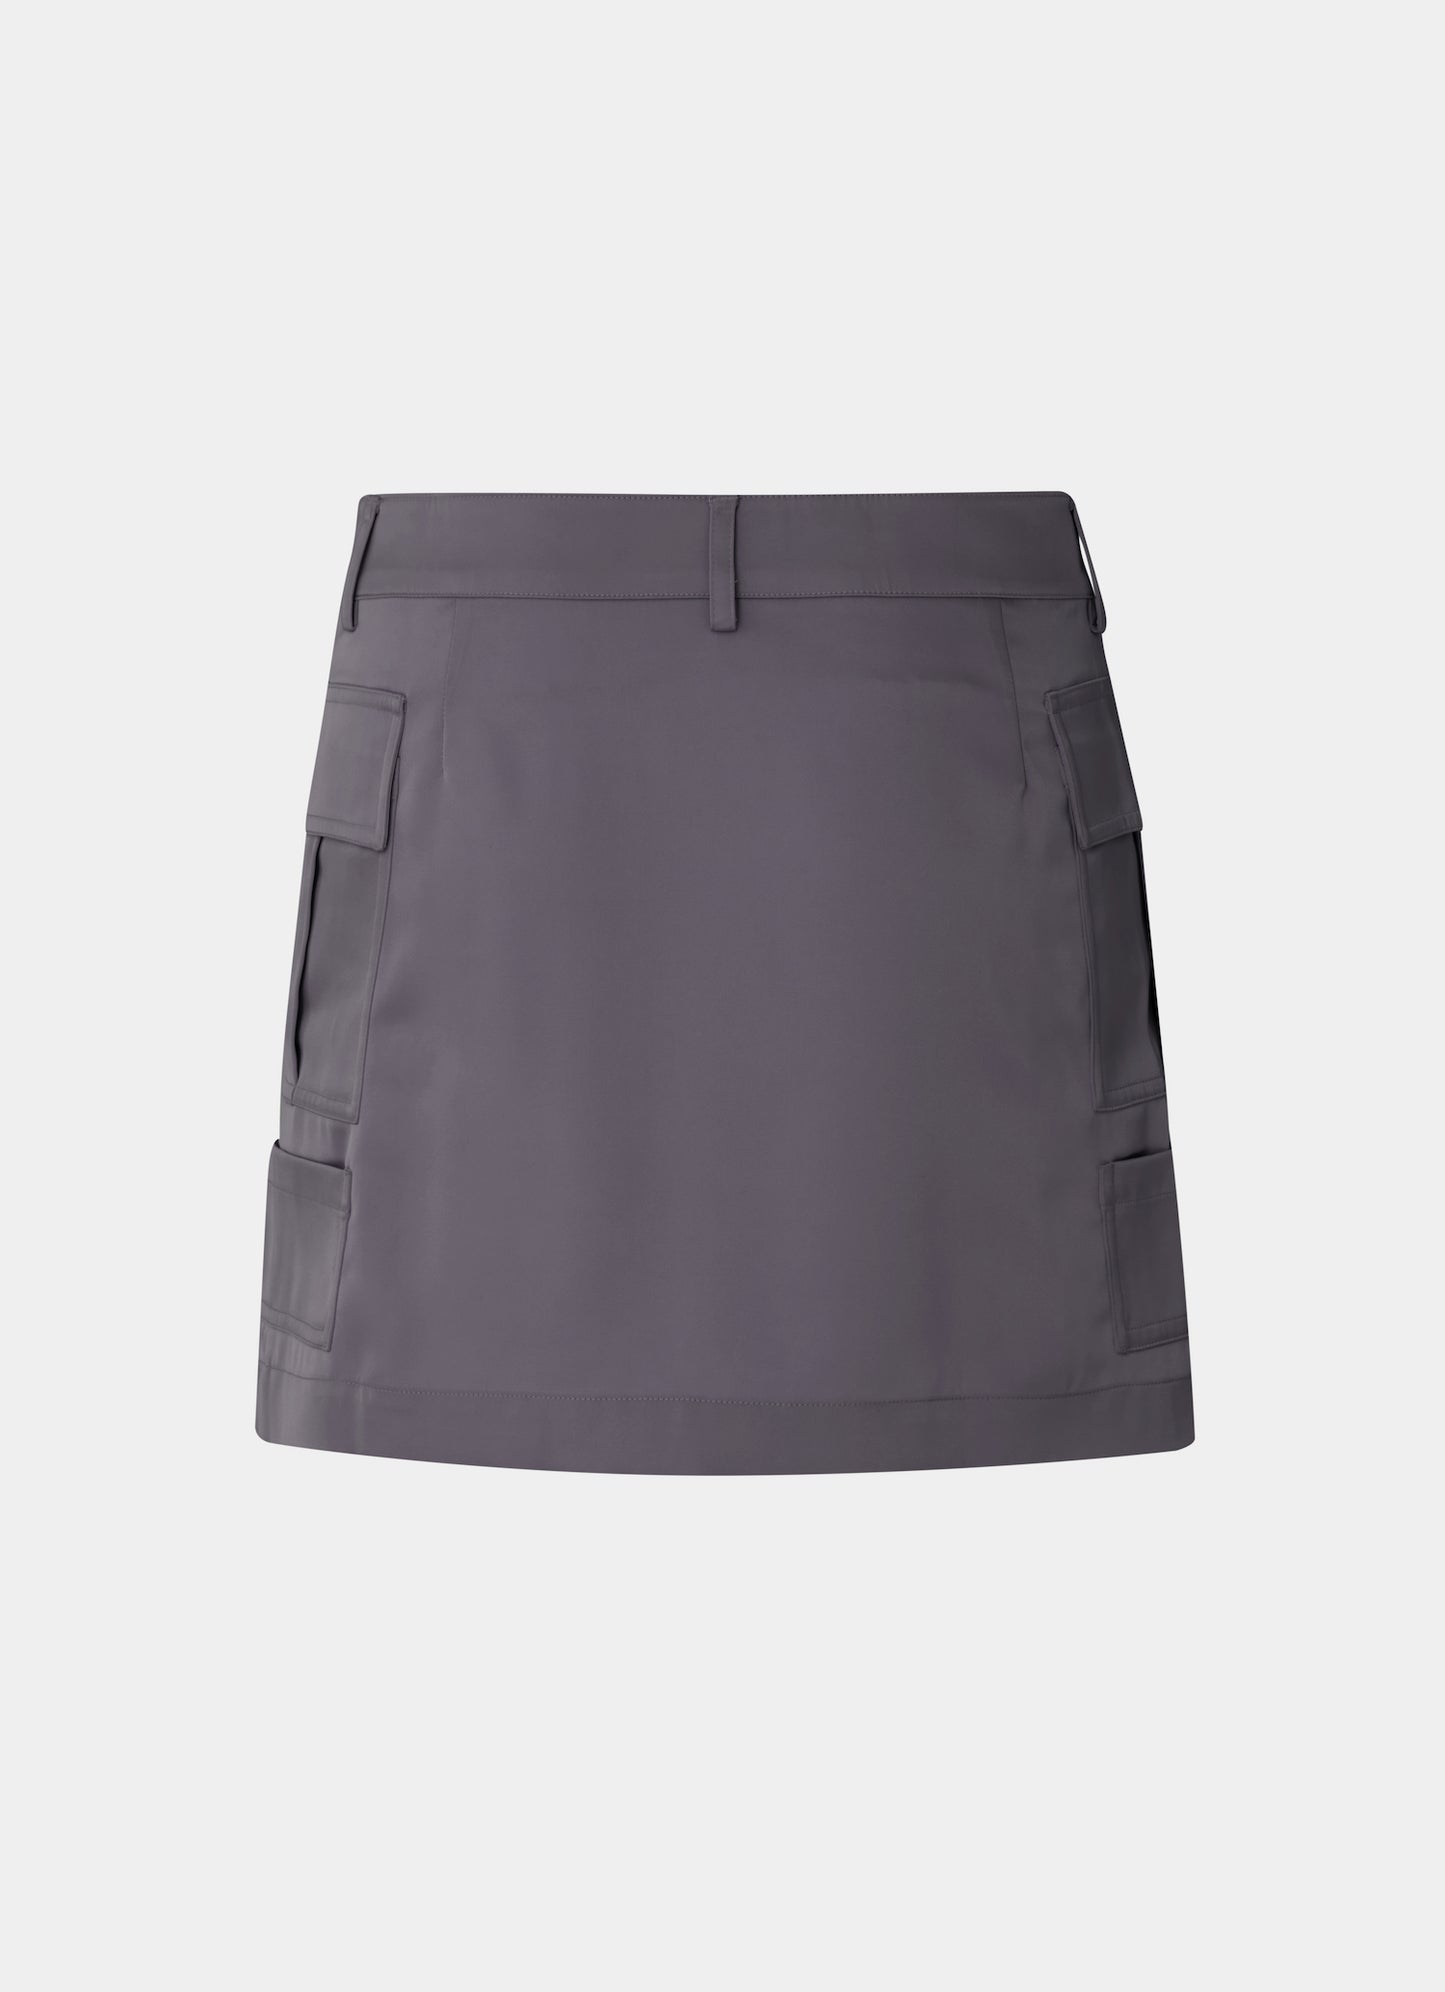 Satin Cargo Skirt Grey